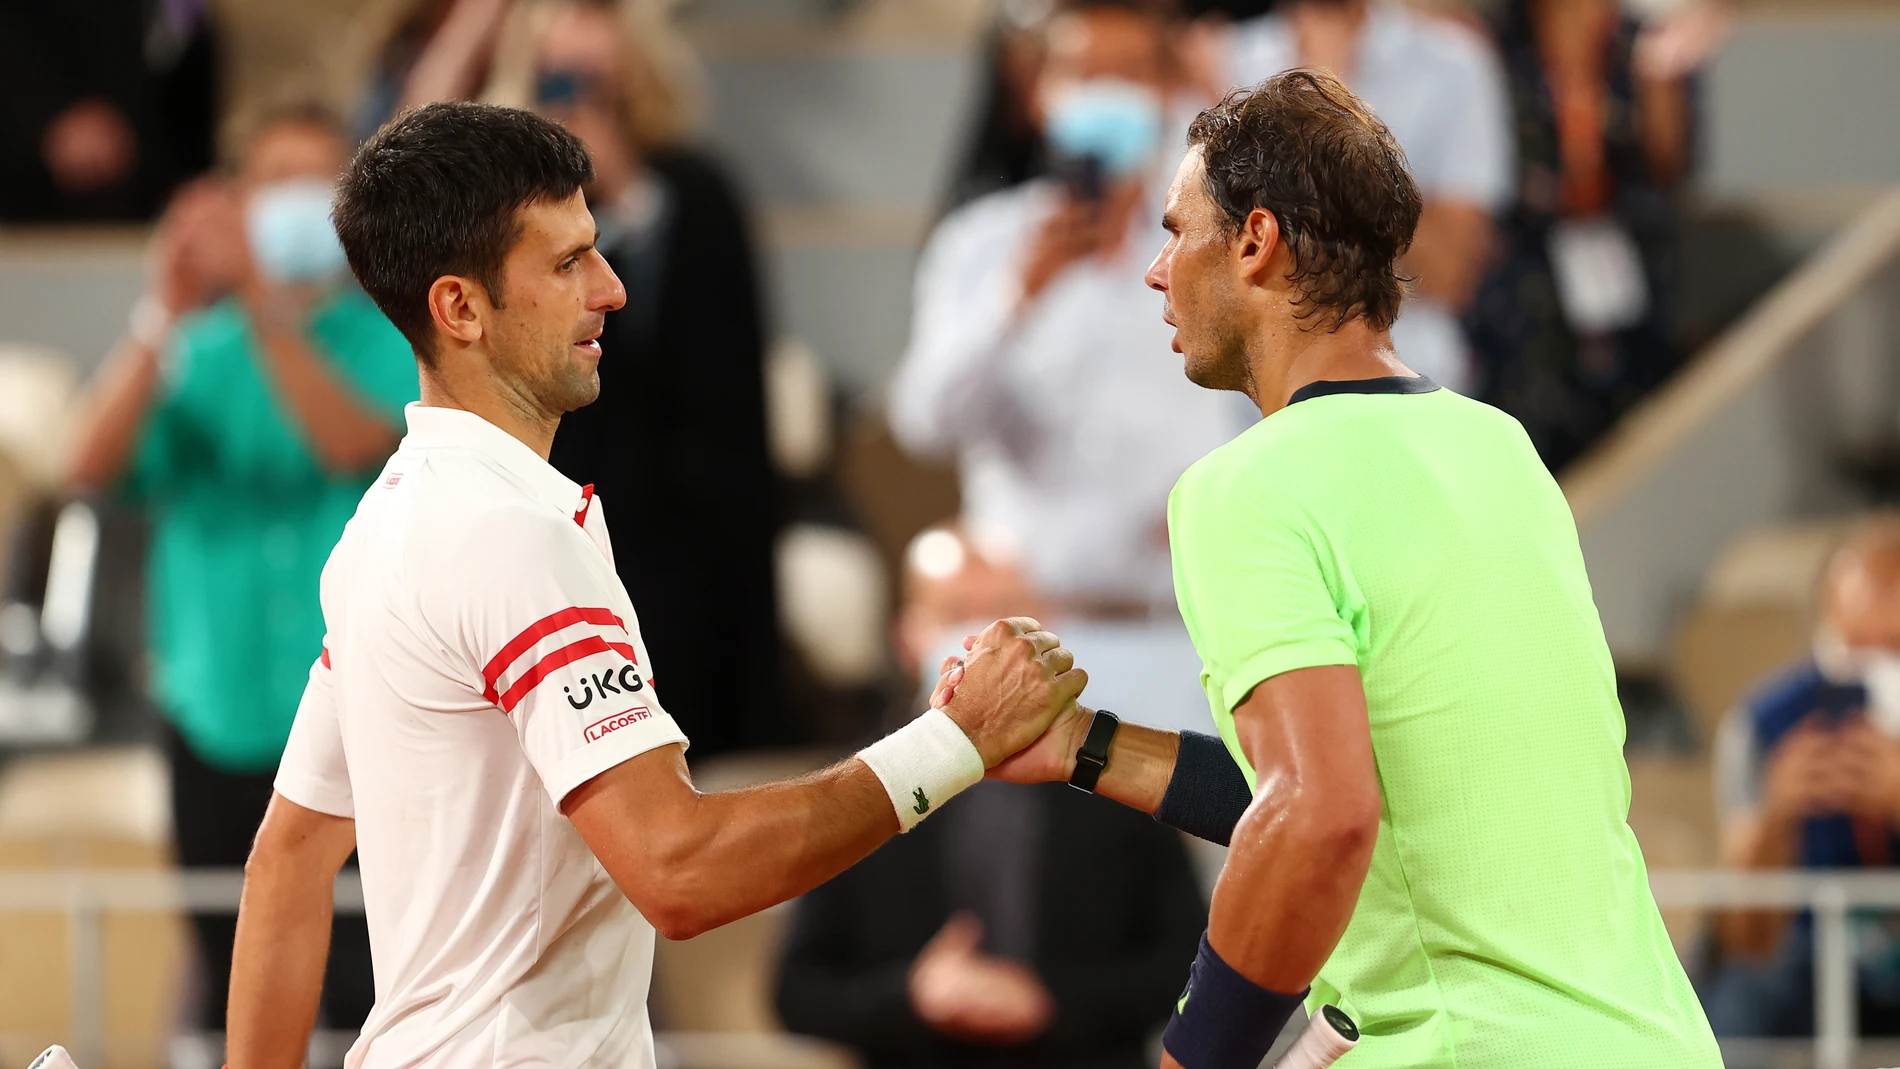 Novak Djokovic saluda a Rafa Nadal tras la victoria en semifinales en Roland Garros